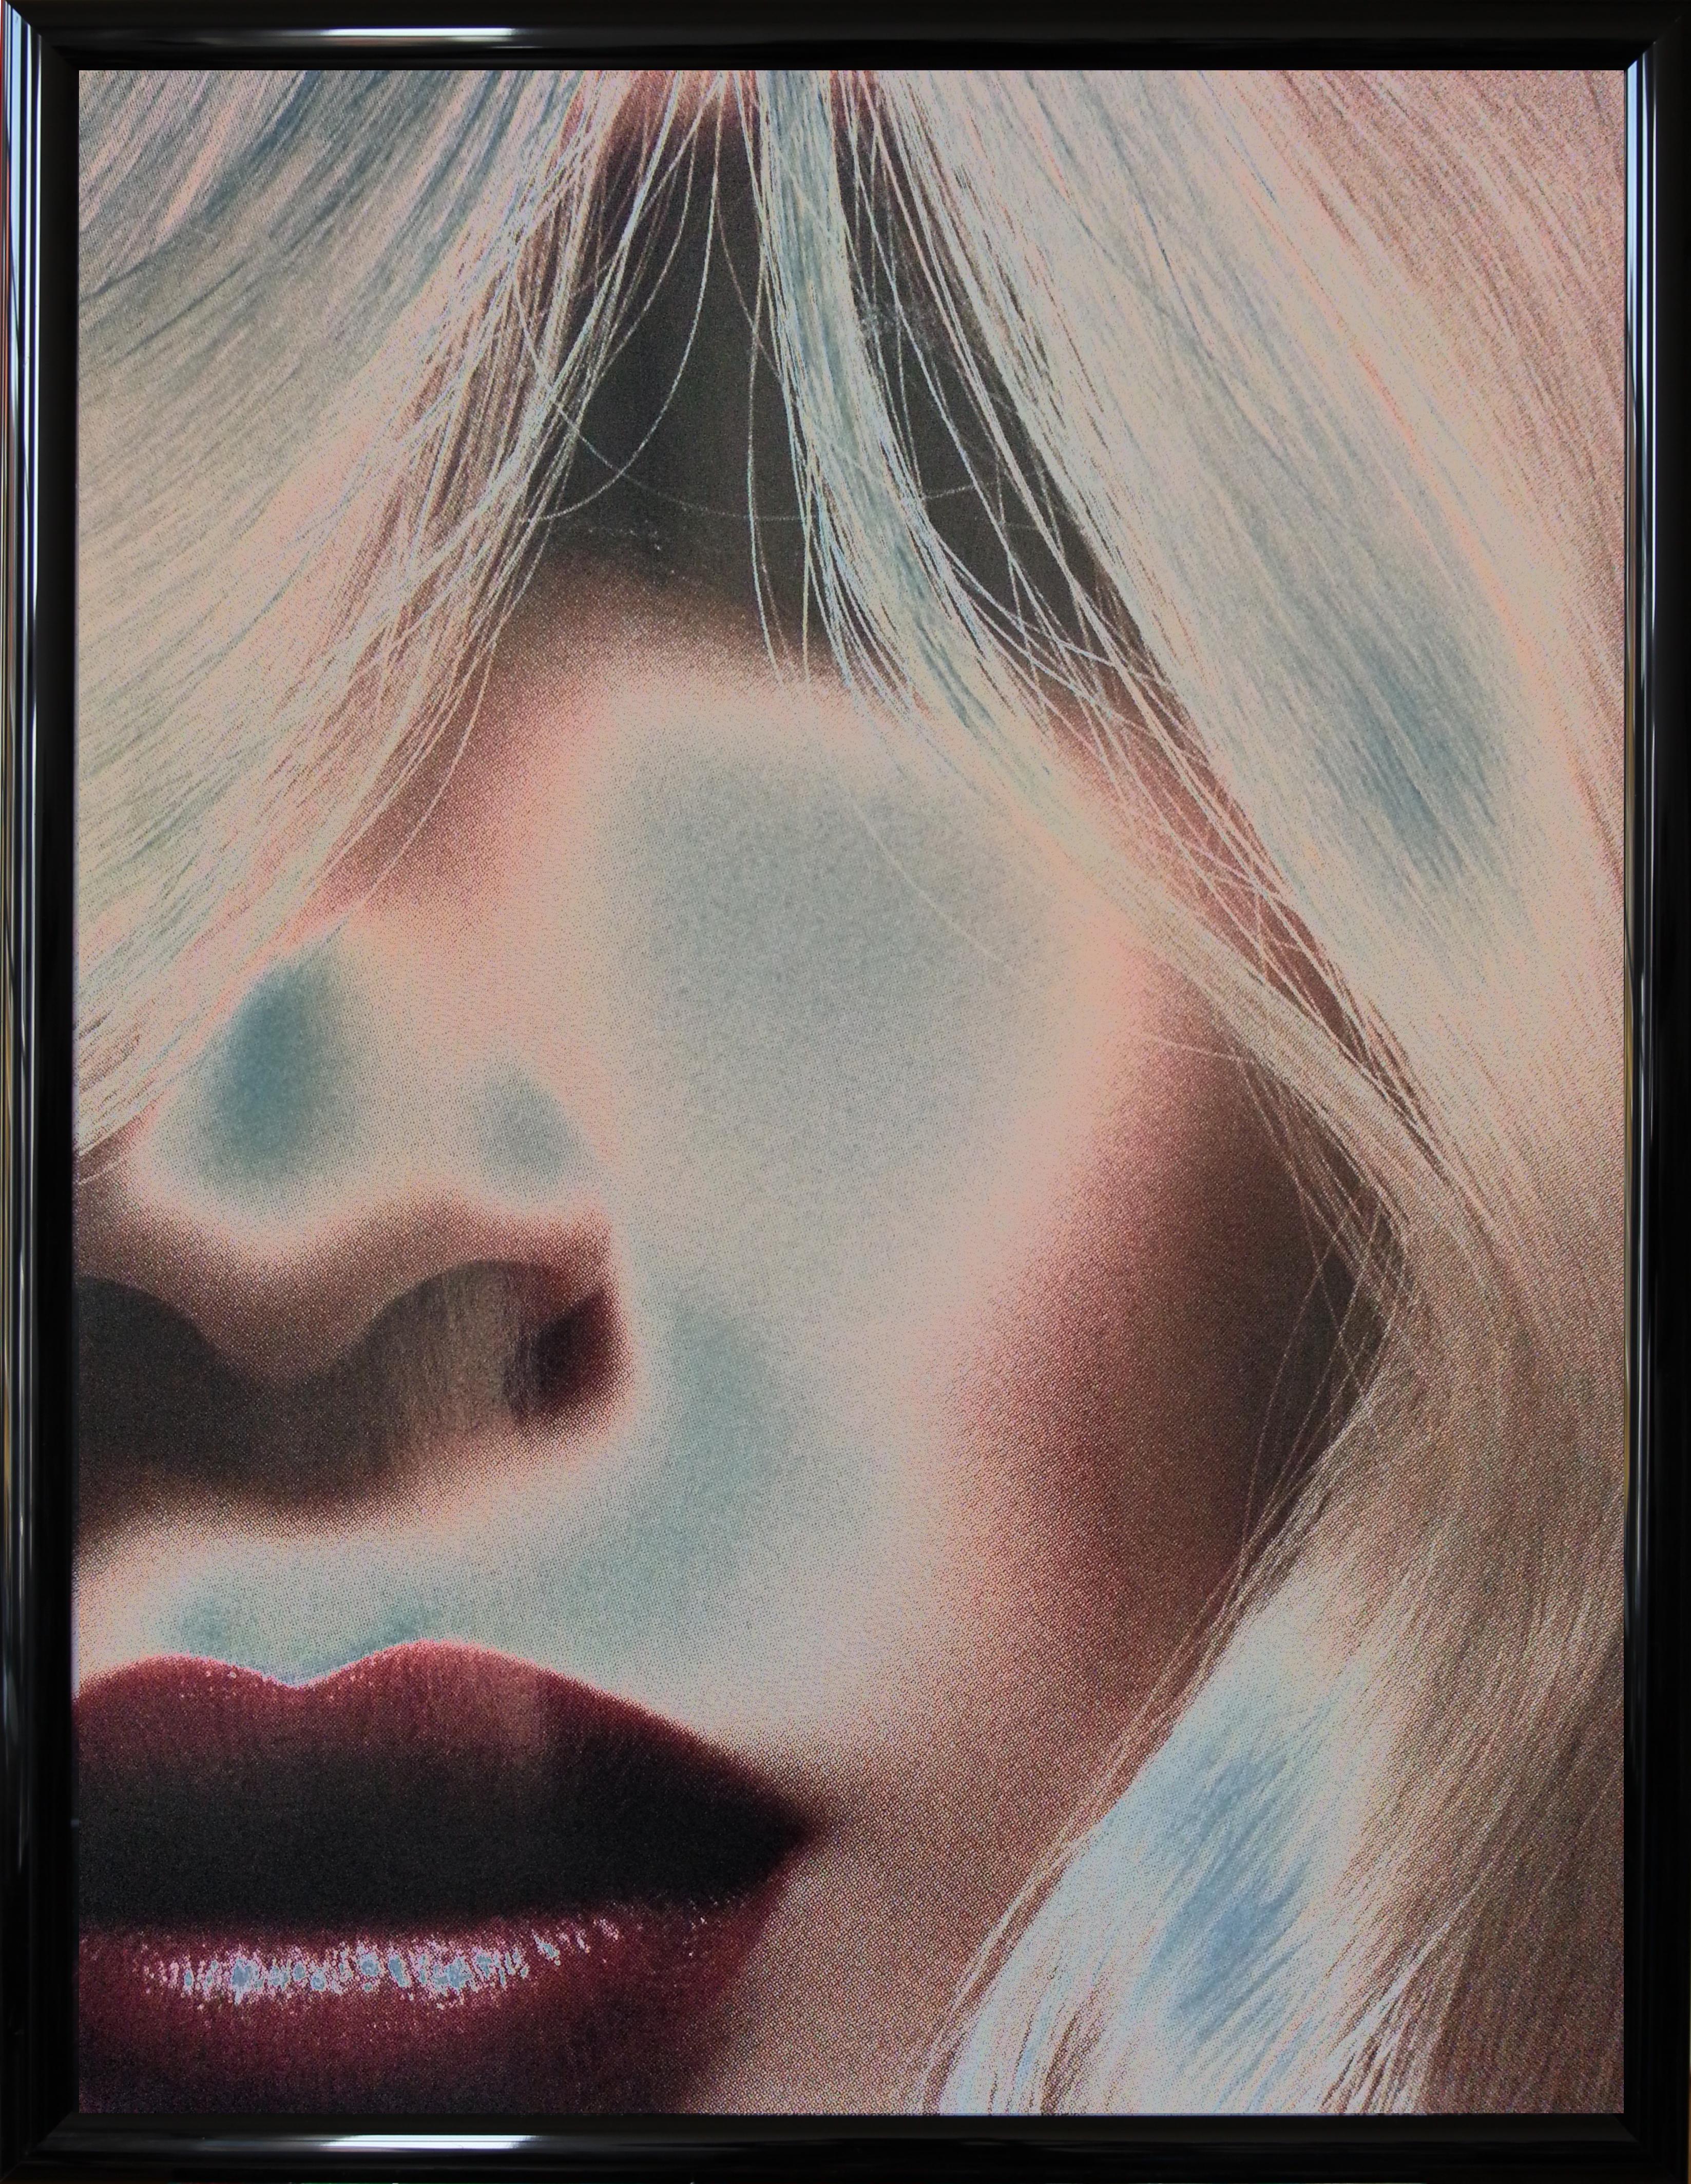 Fotografie, 2014. Ultra HD, gedruckt auf Fuji Crystal DP I II. 1 von 30 Abzügen hinter Acrylglas. Gerahmt. Signiert, betitelt, datiert und nummeriert auf der Rückseite. Es kommt direkt aus dem Atelier des Künstlers. 
Höhe: 94,8 cm (37.32 in),